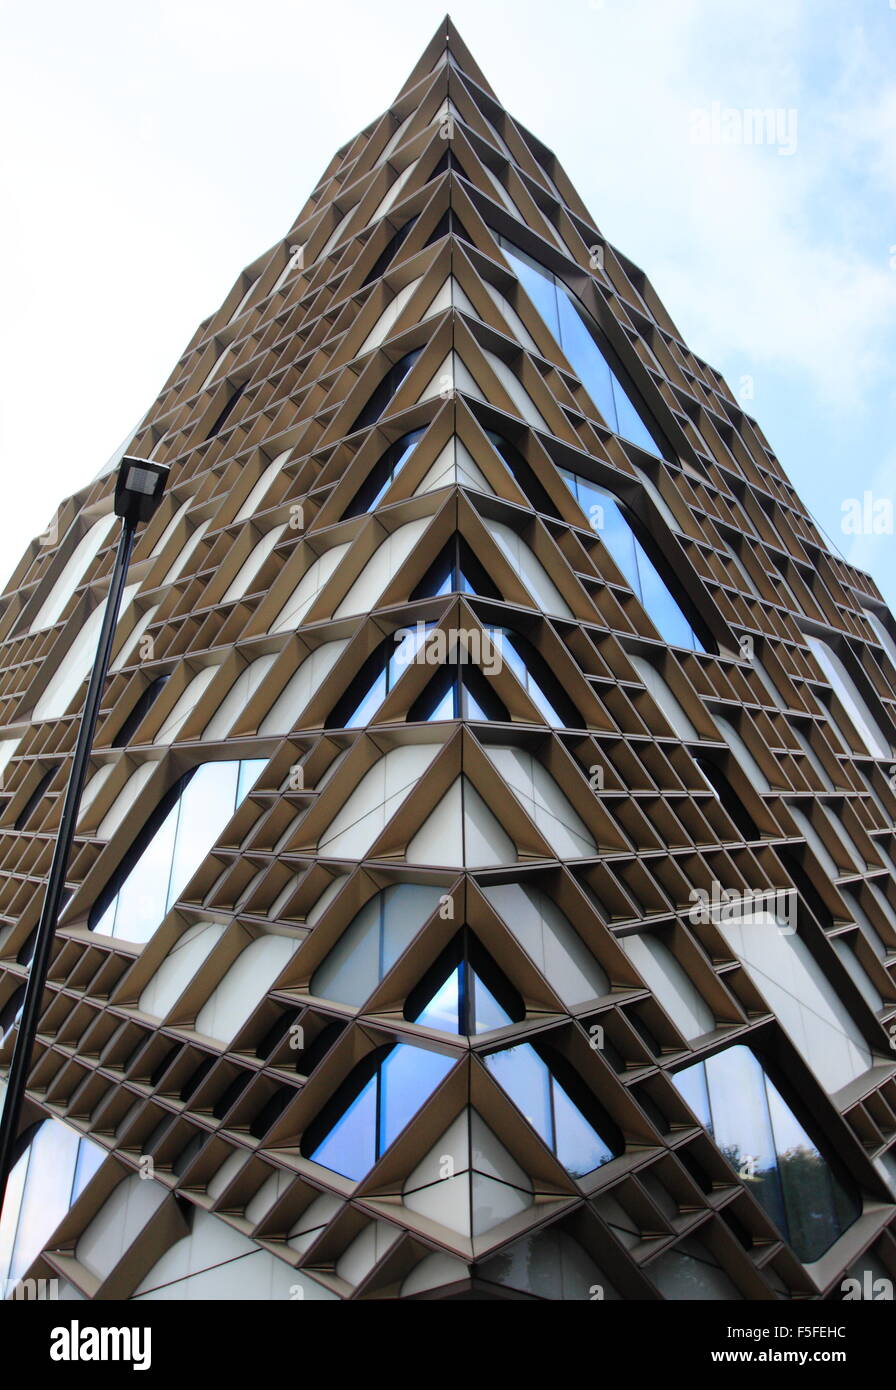 Das Diamant-Gebäude; Hörsäle der Universität von Sheffield, Sheffield Stadtzentrum, Yorkshire England UK - 2015 Stockfoto